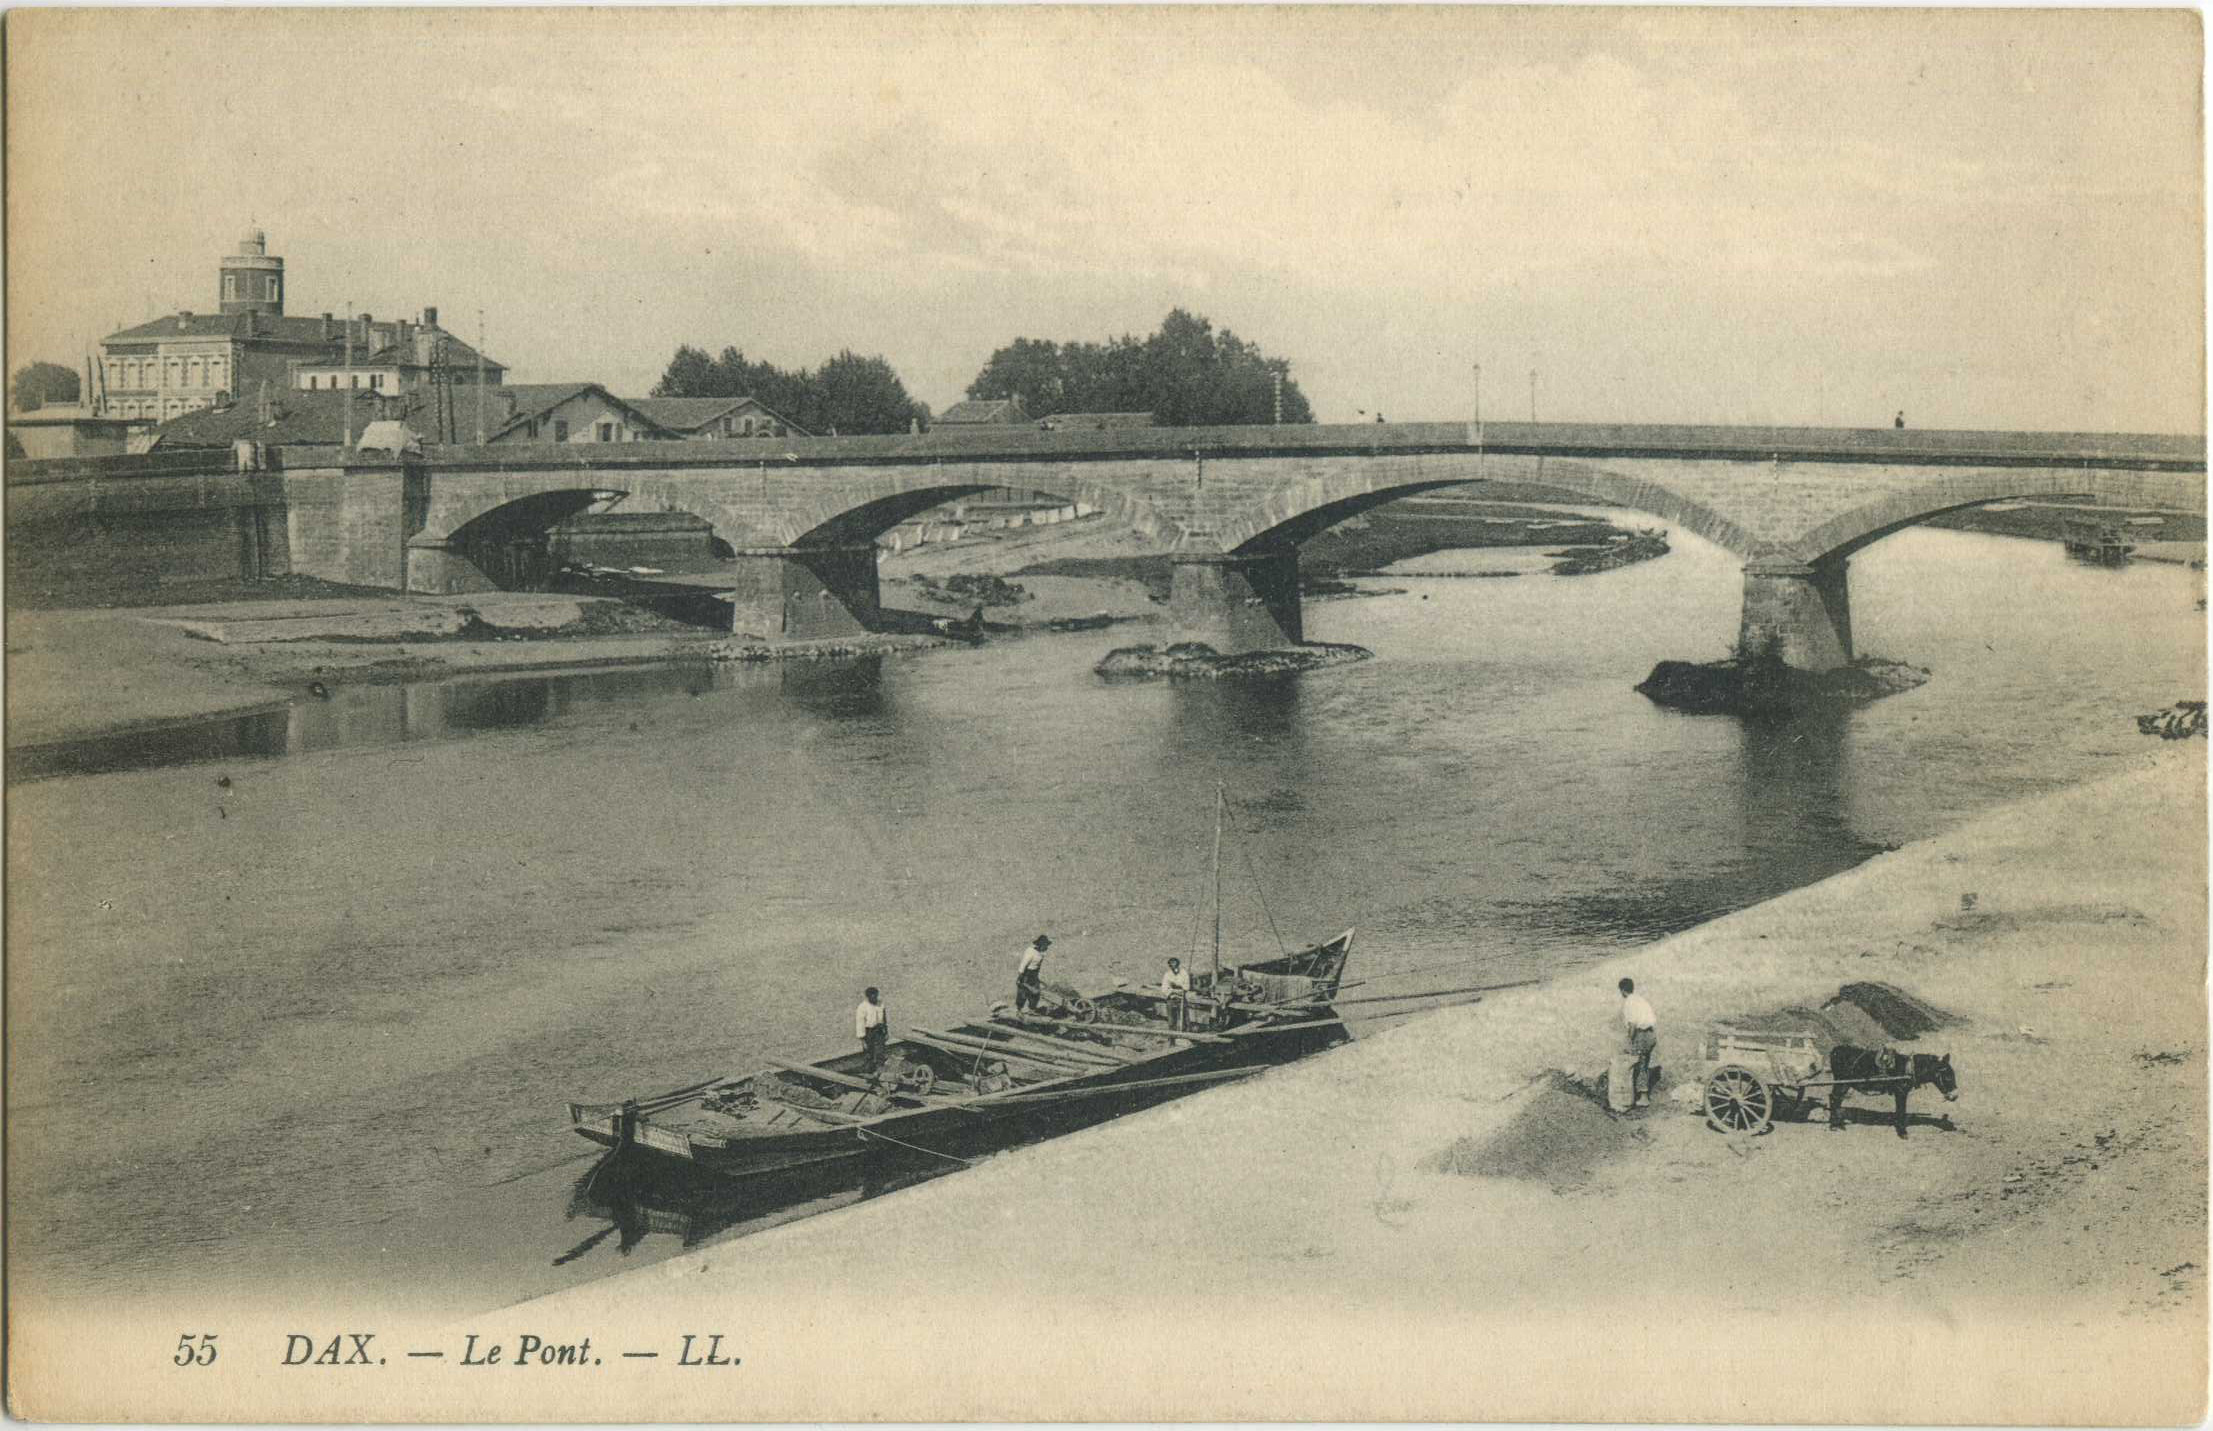 Dax - Le Pont.